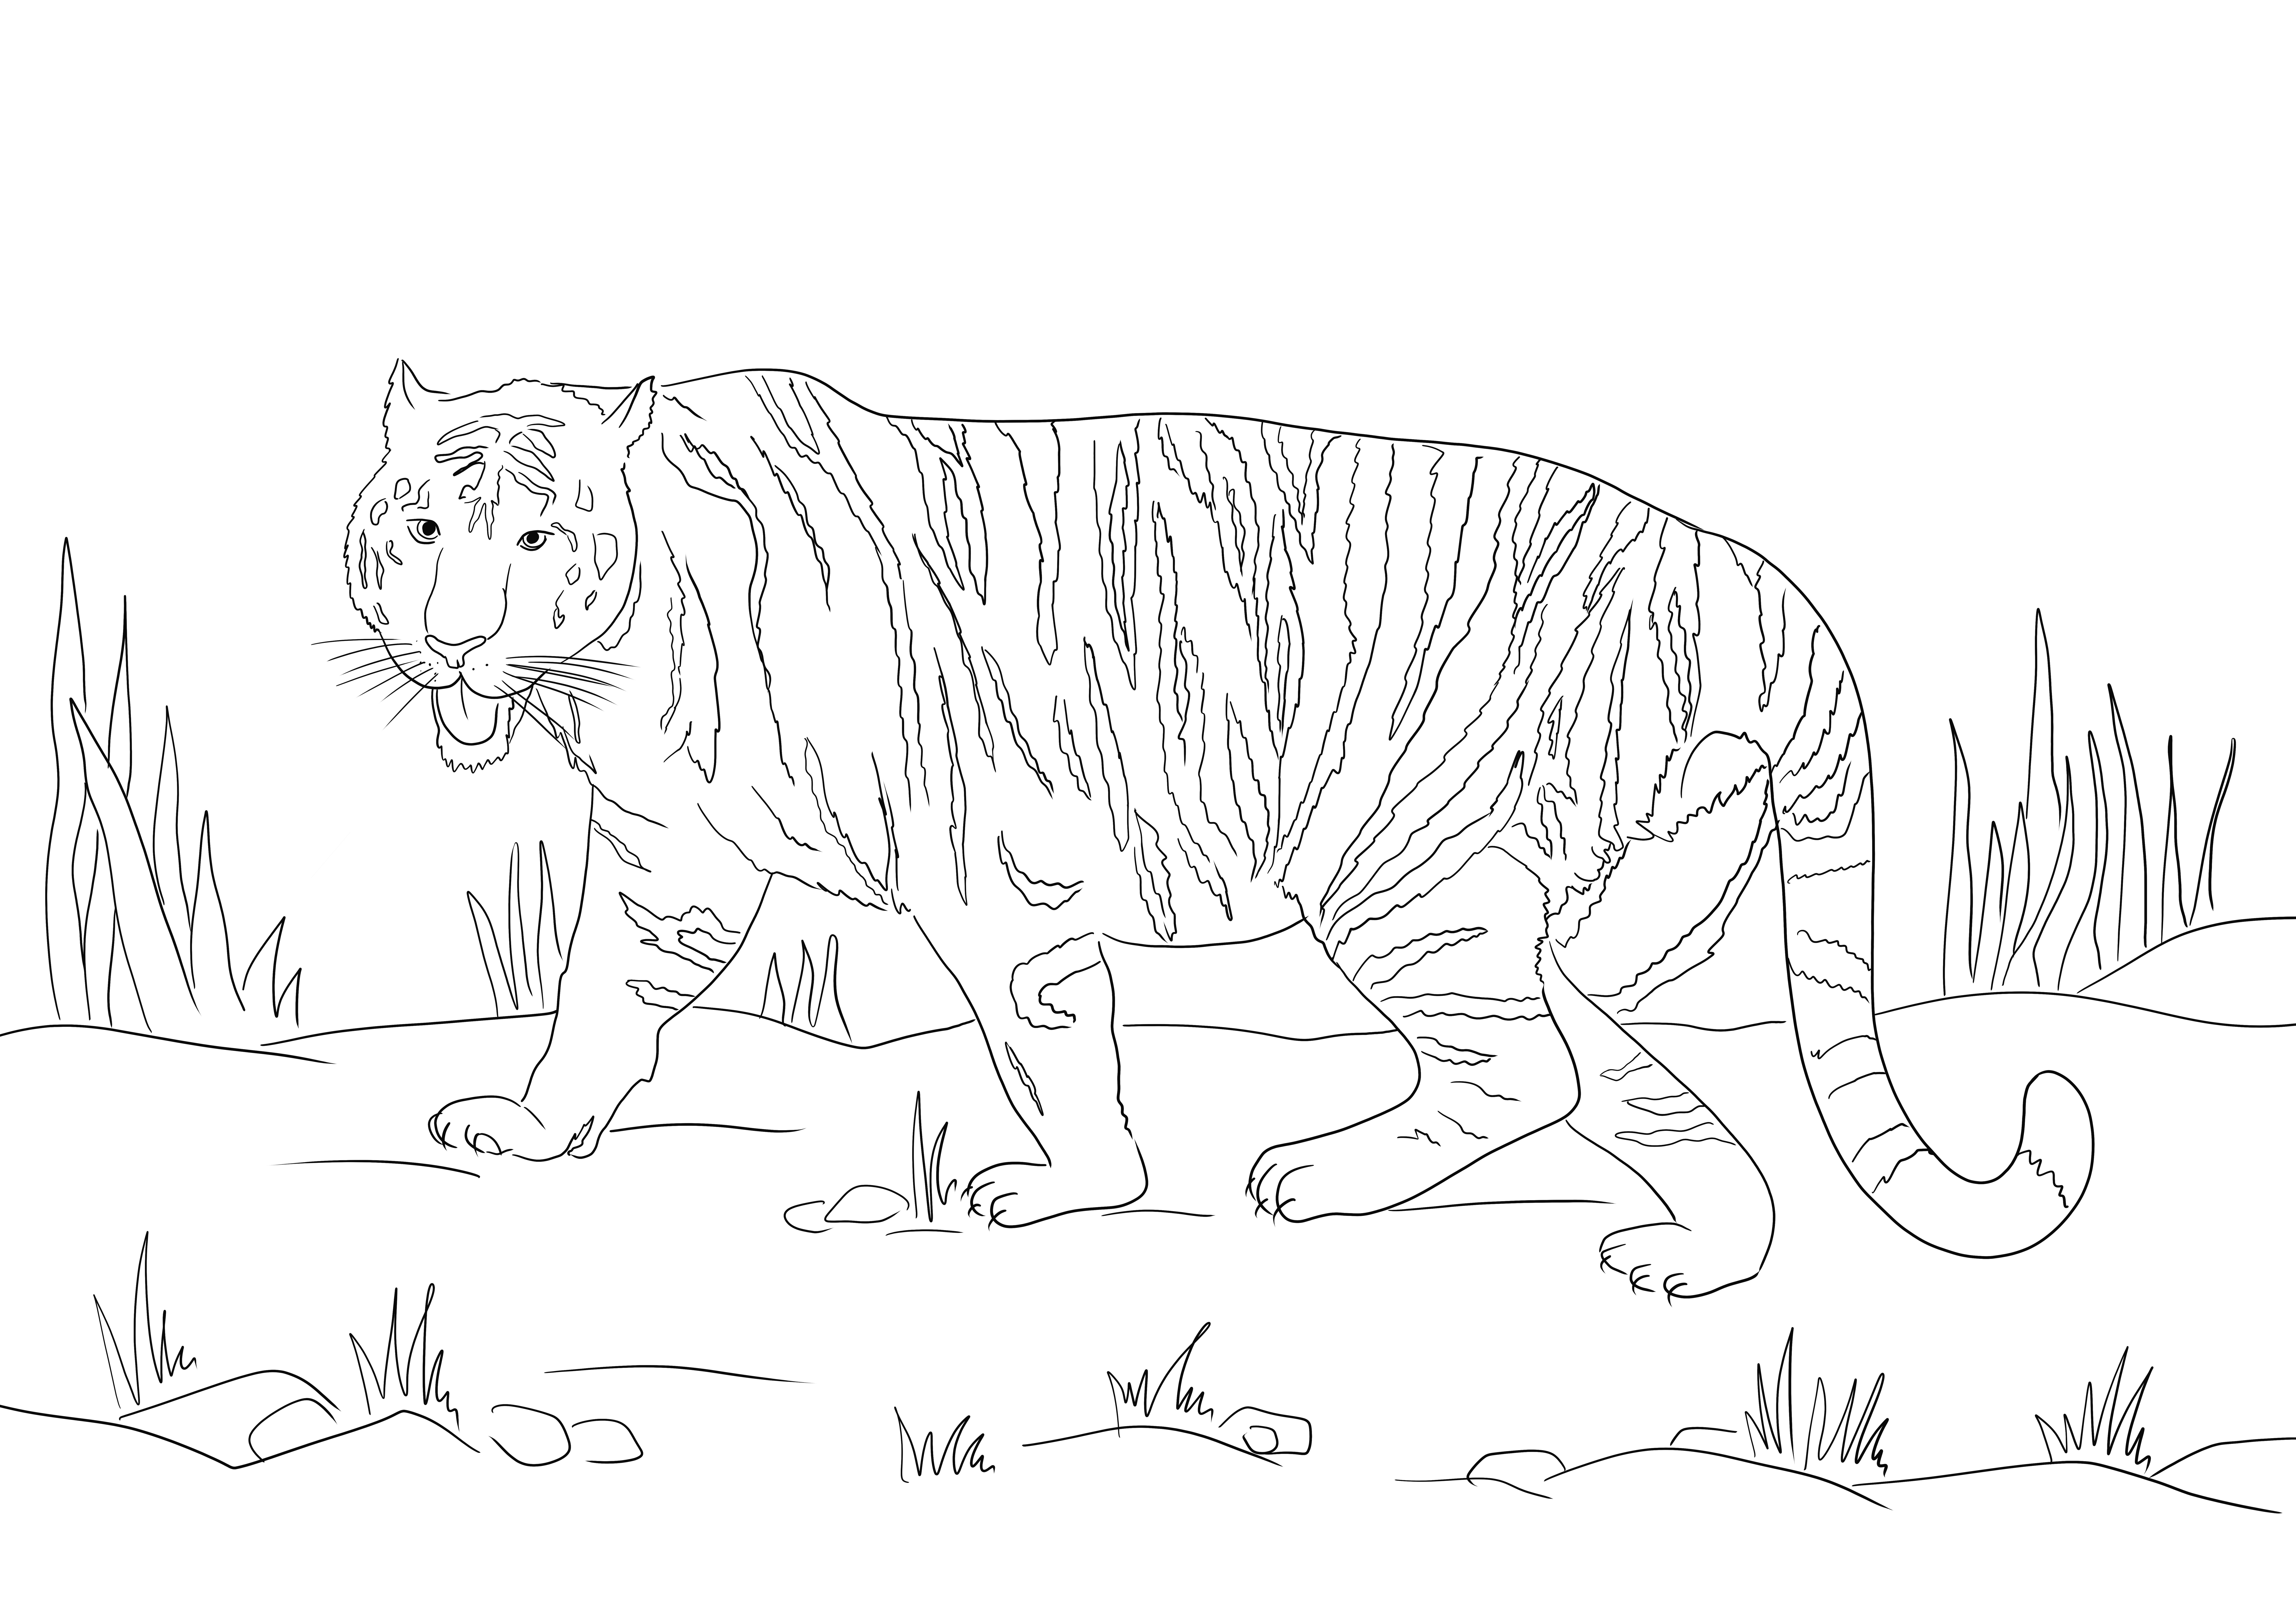 Kolorowanka spacerującego tygrysa do pobrania za darmo i wydrukowania